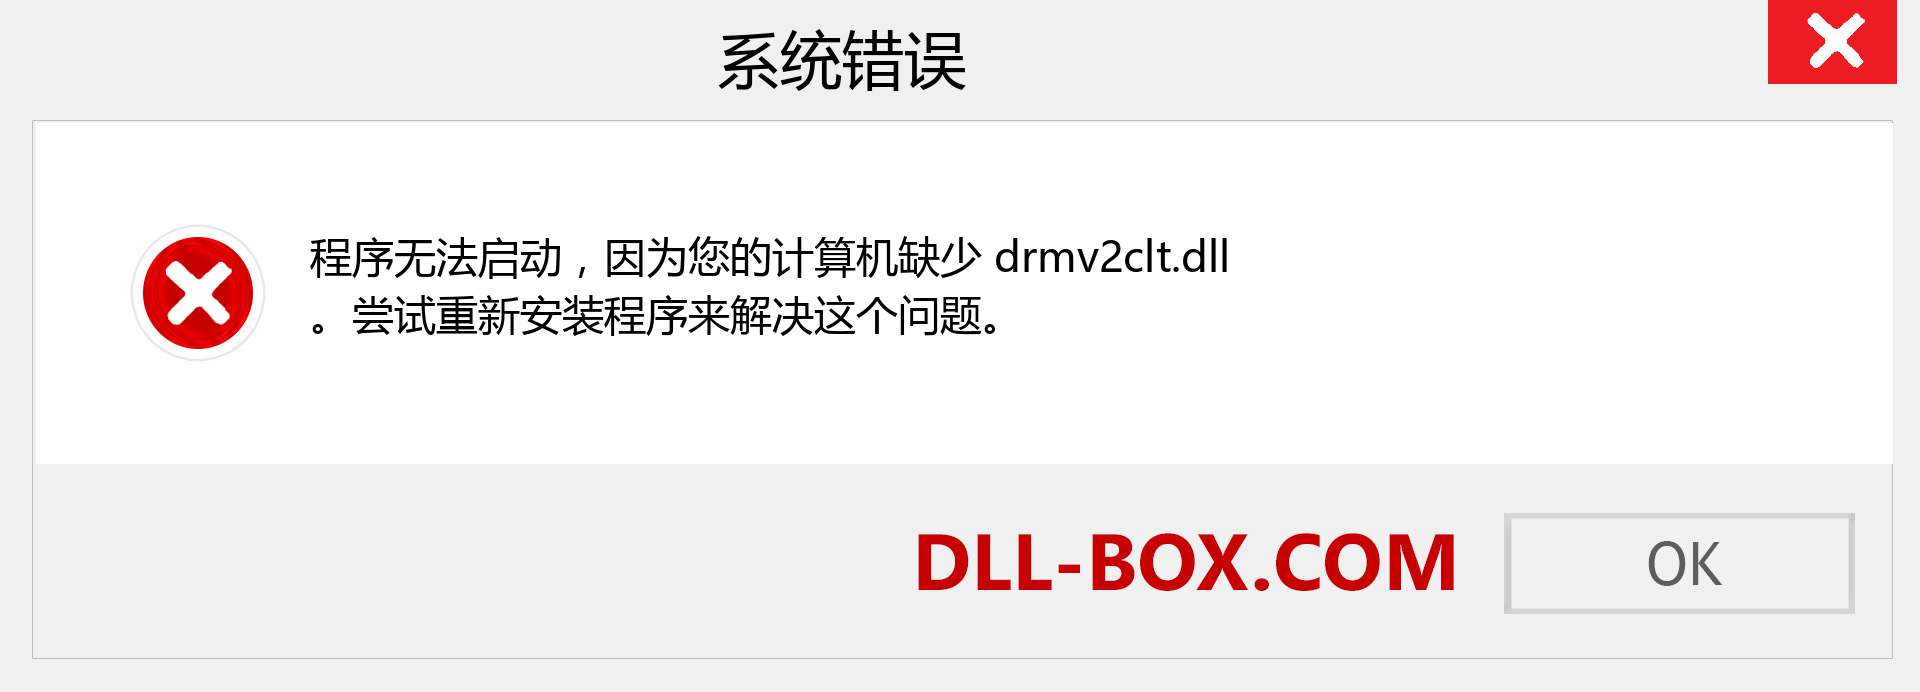 drmv2clt.dll 文件丢失？。 适用于 Windows 7、8、10 的下载 - 修复 Windows、照片、图像上的 drmv2clt dll 丢失错误